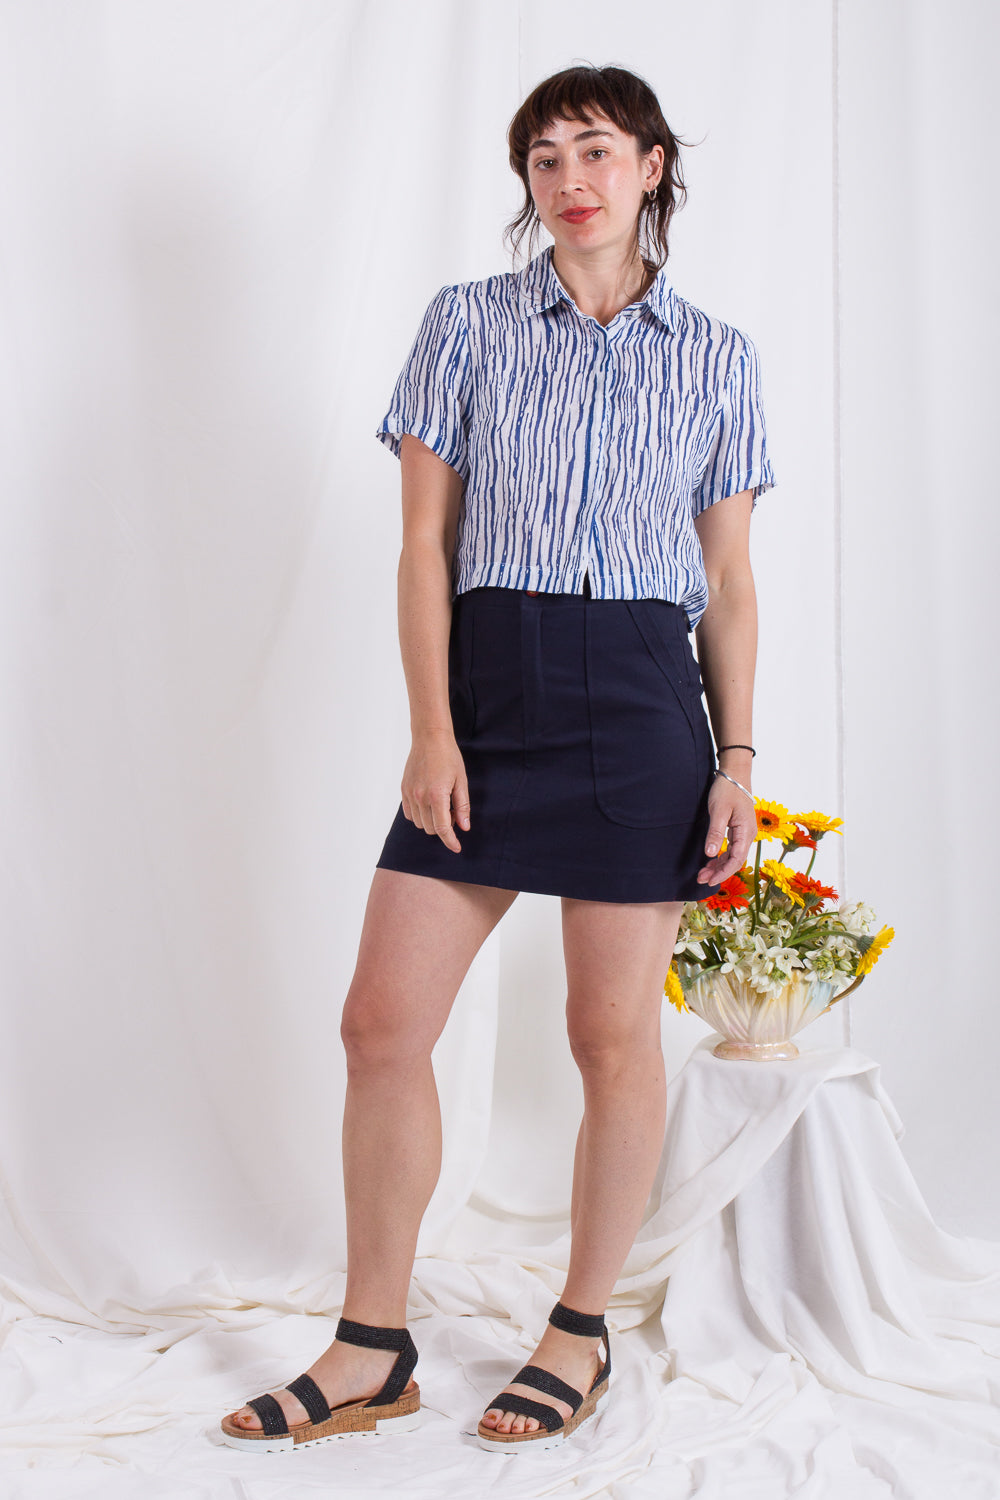 Ink Twill Mini Skirt (Last Size 6/8)